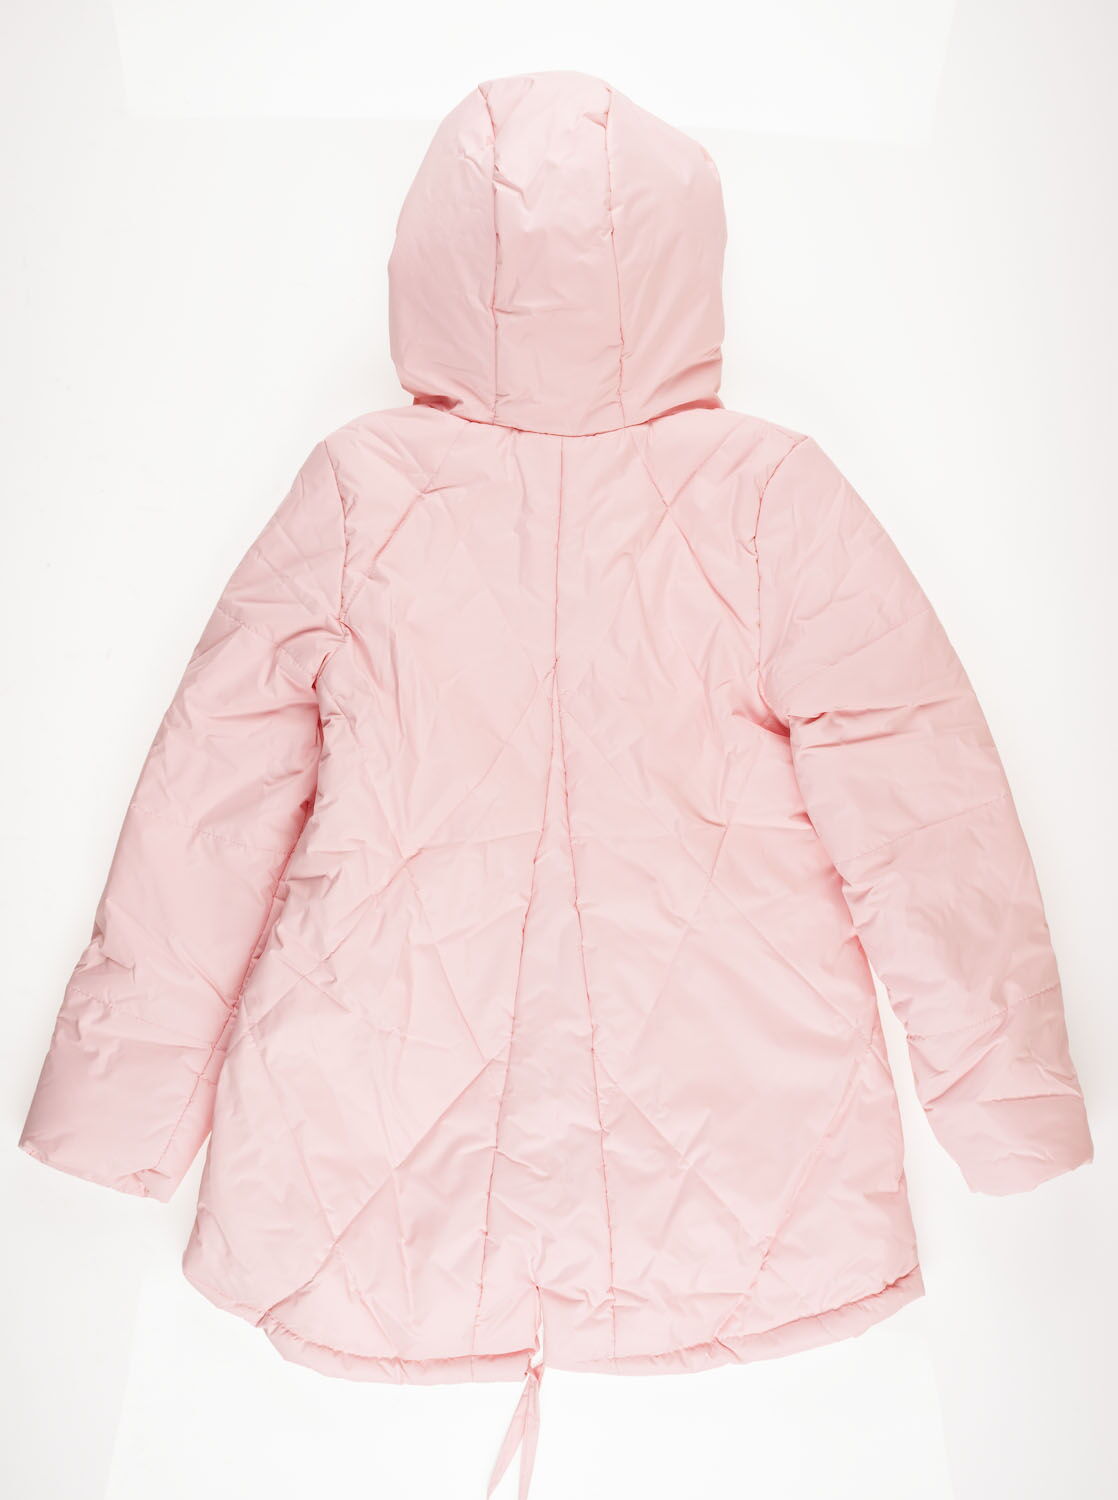 Куртка удлиненная для девочки ОДЯГАЙКО розовая 22101 - размеры